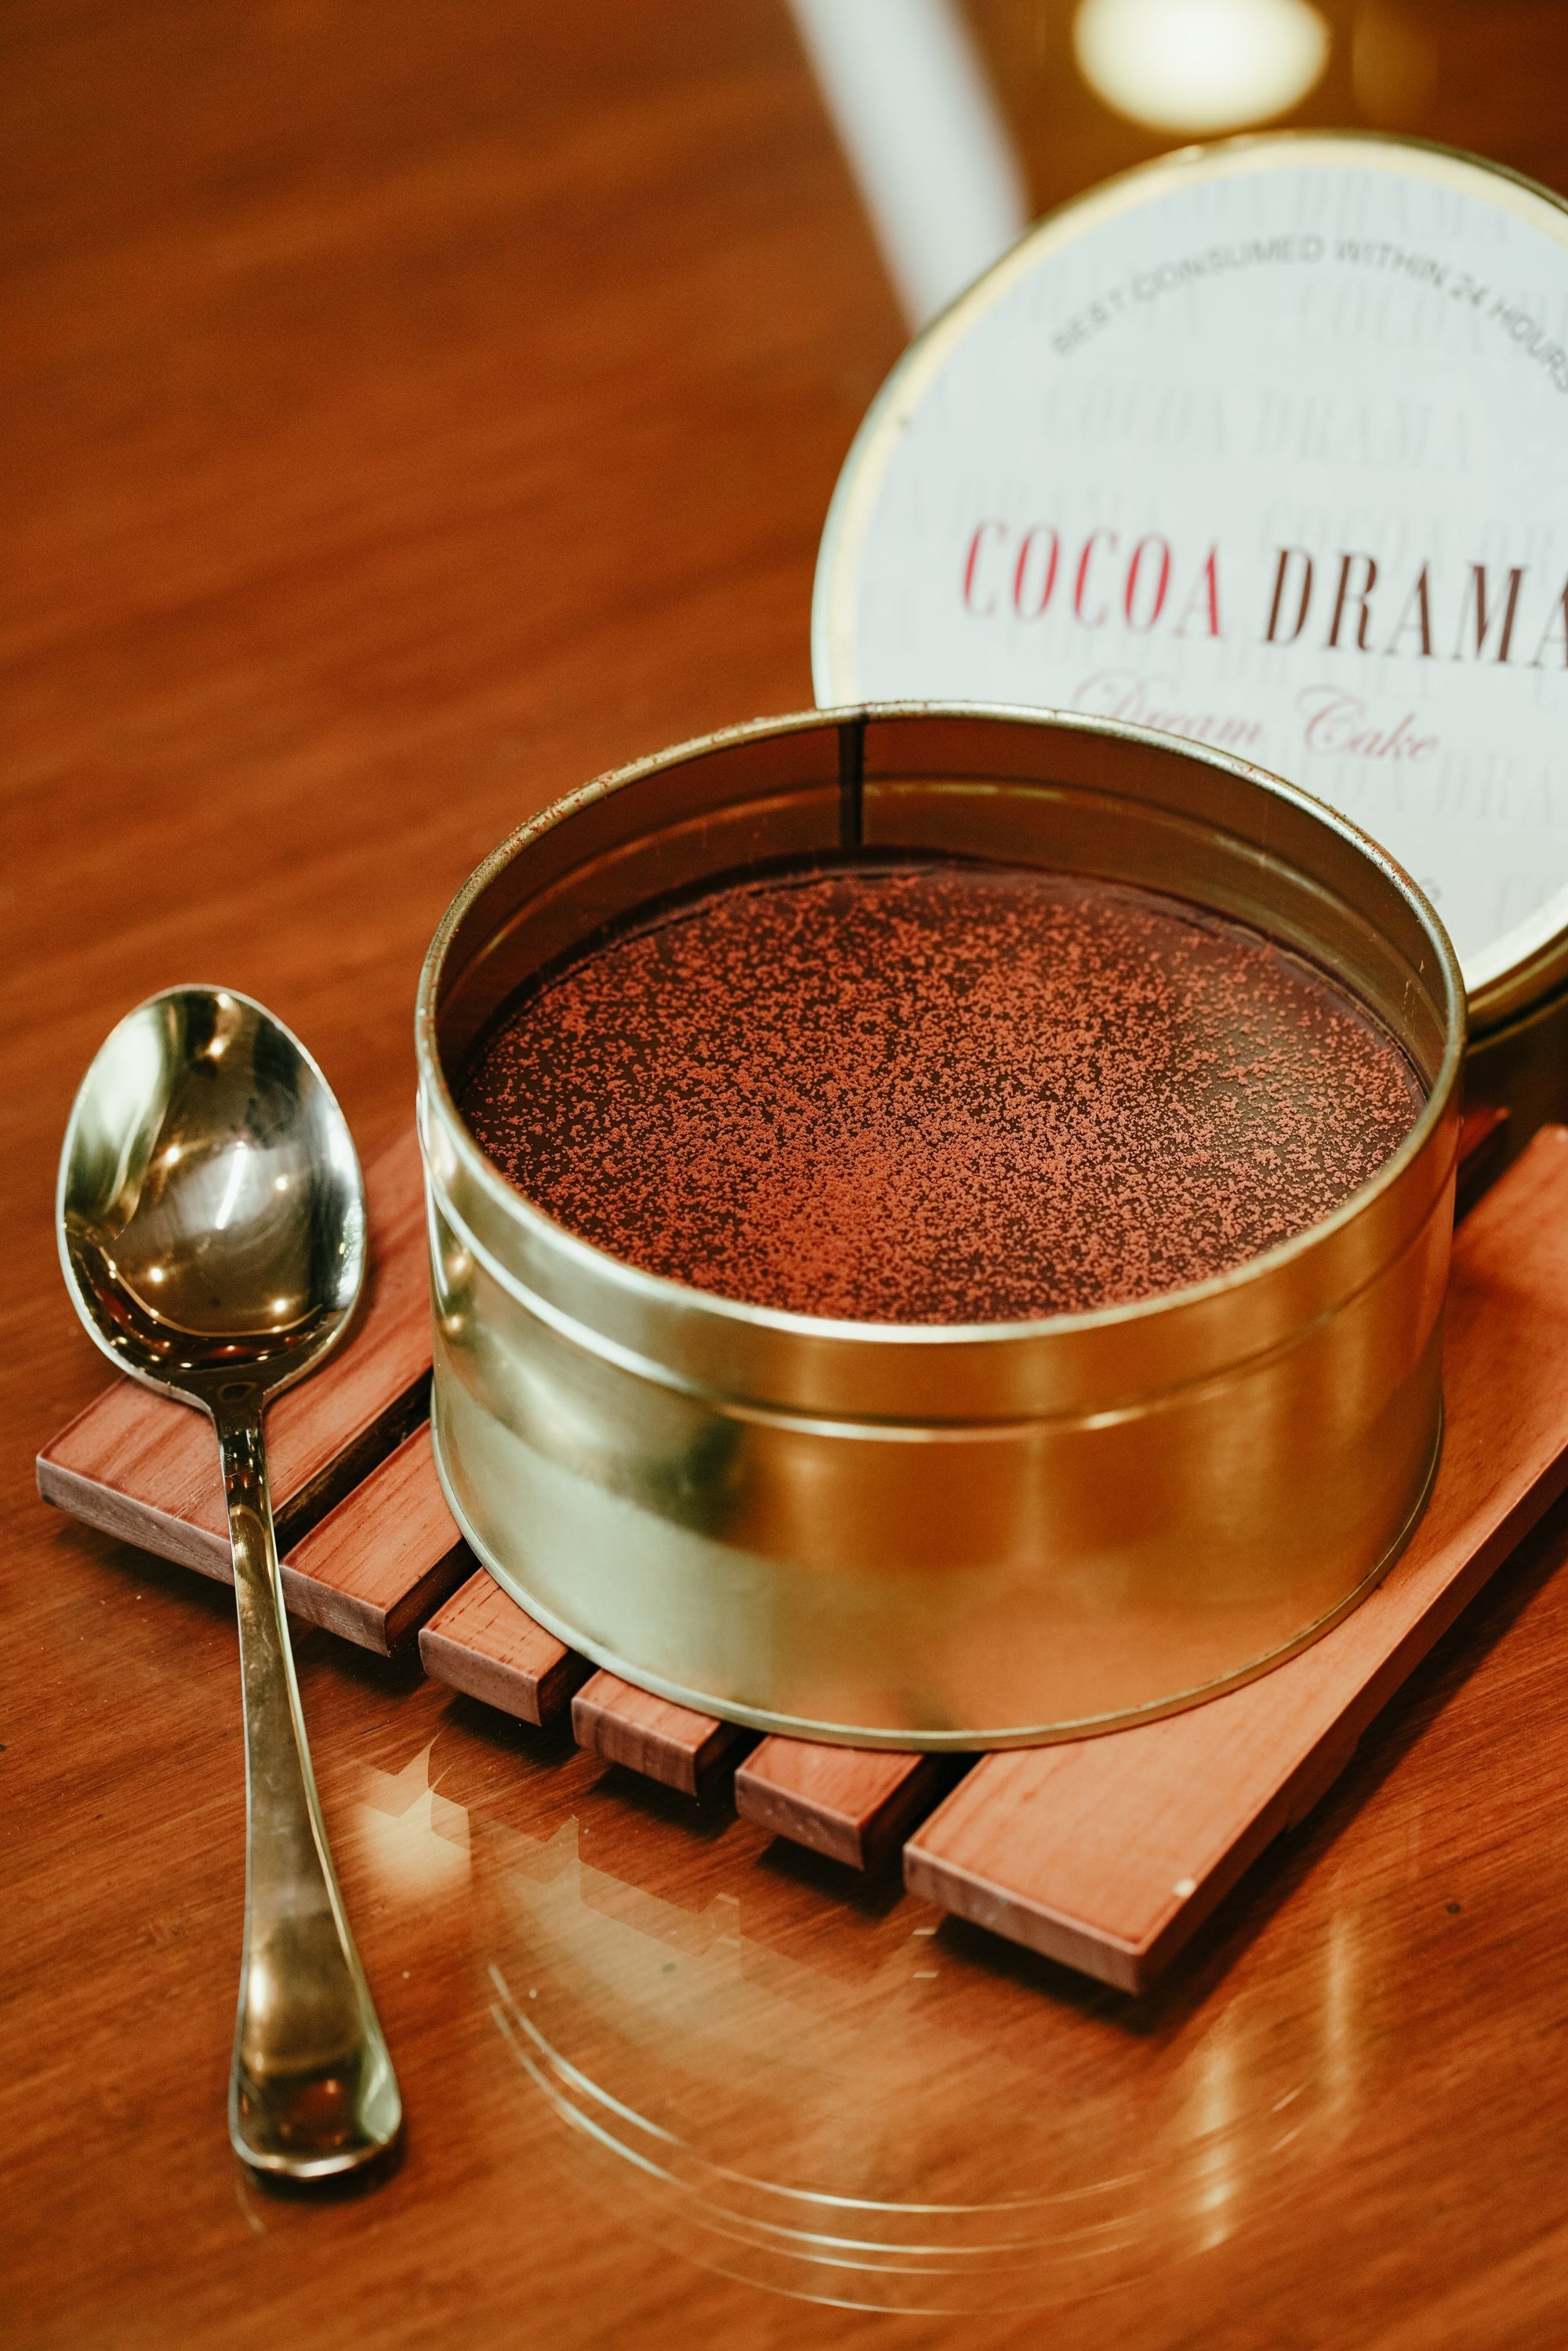 CHOCOLATE DREAM CAKE | Navya Bake Shop